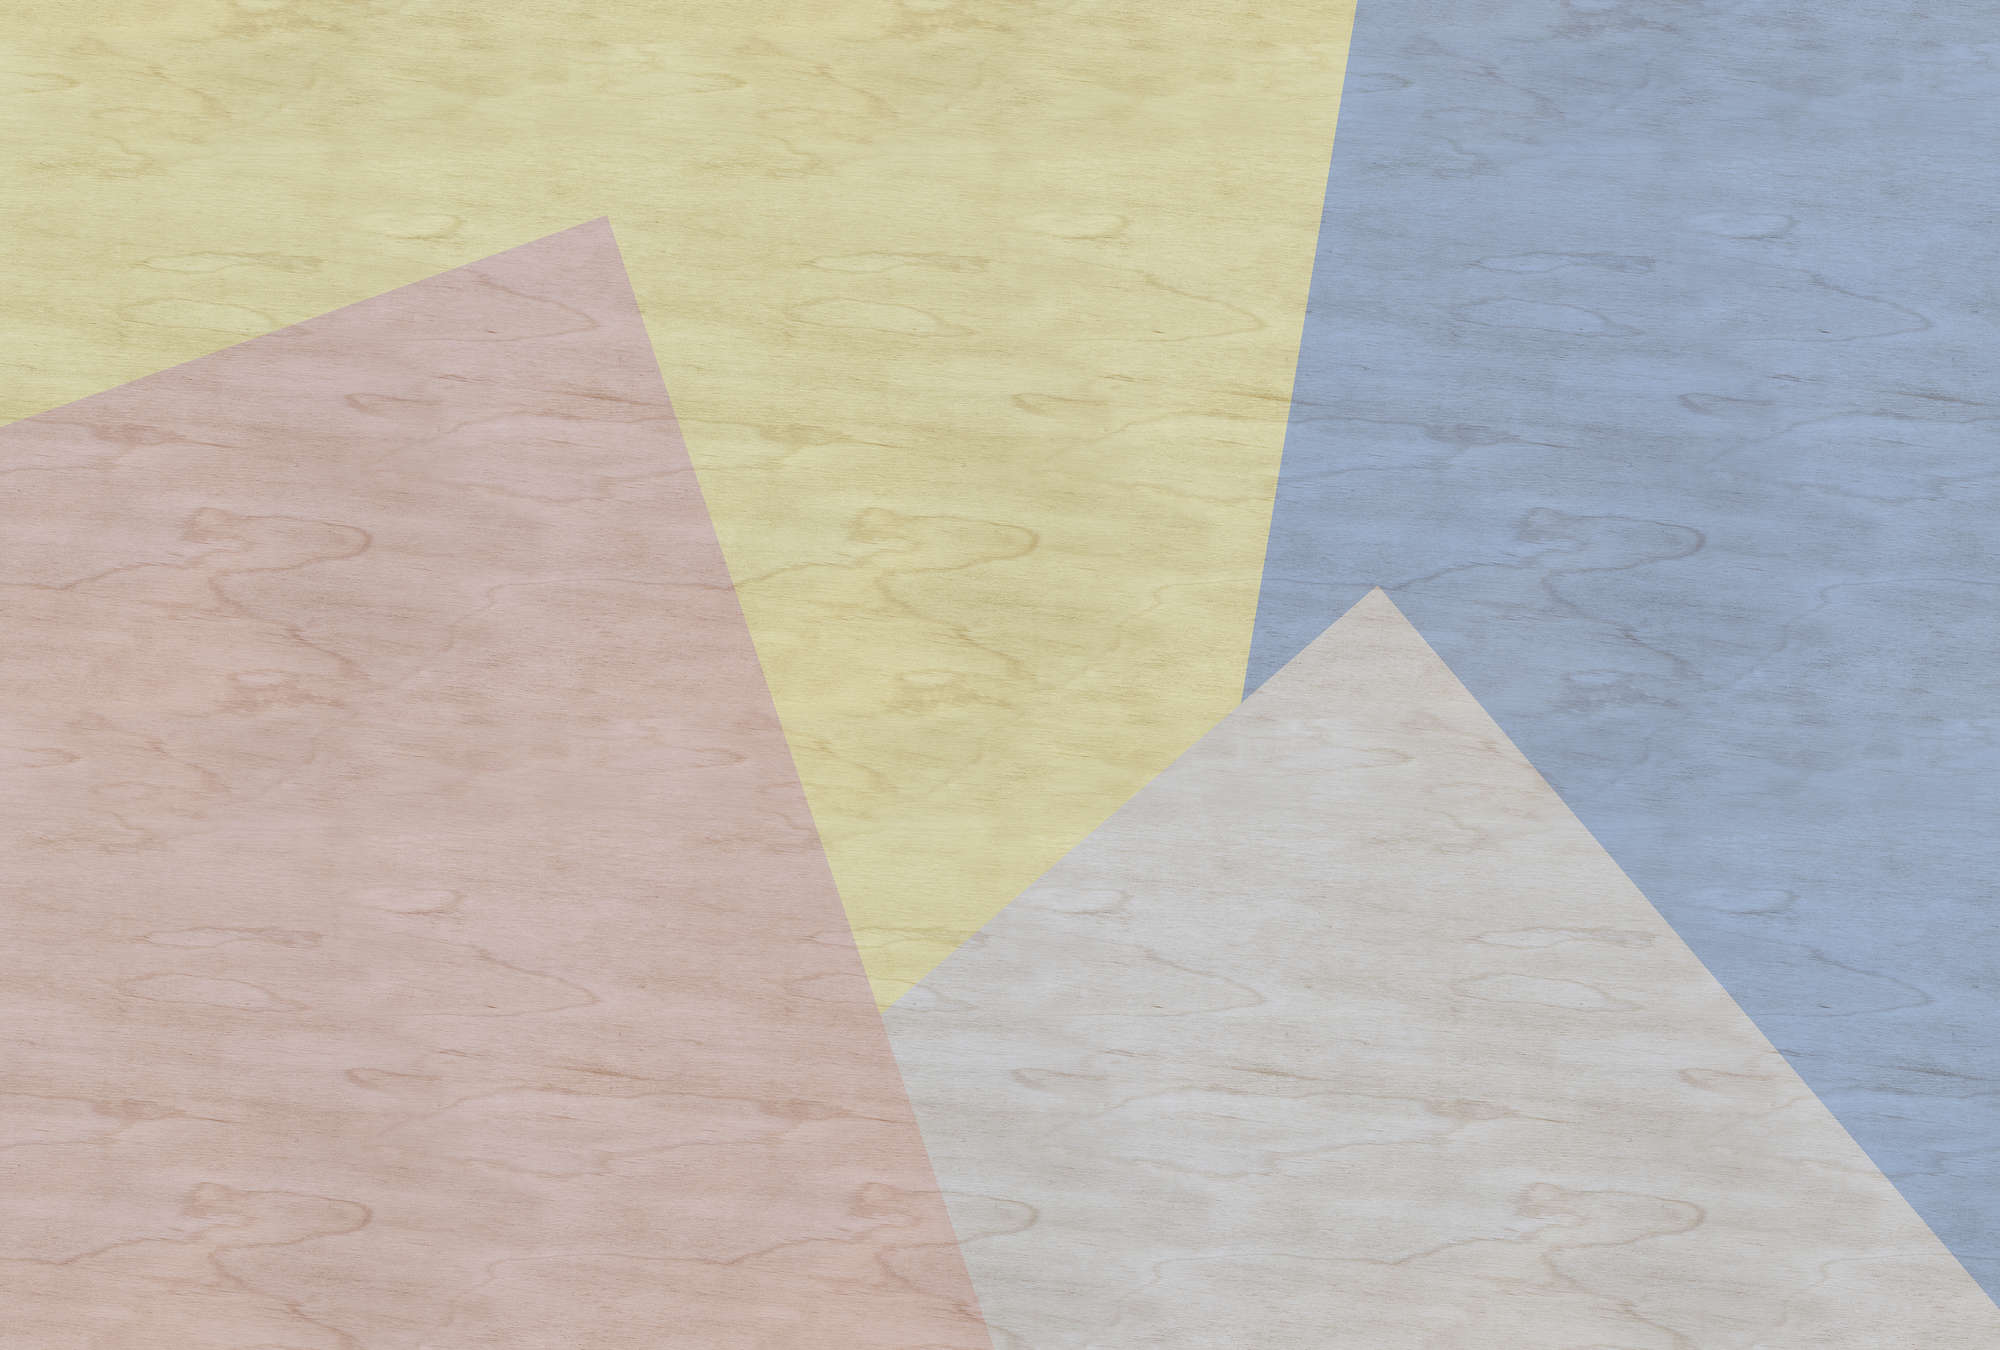             Inaly 3 - Papel pintado colorido abstracto - estructura de contrachapado - Beige, Azul | Perla liso no tejido
        